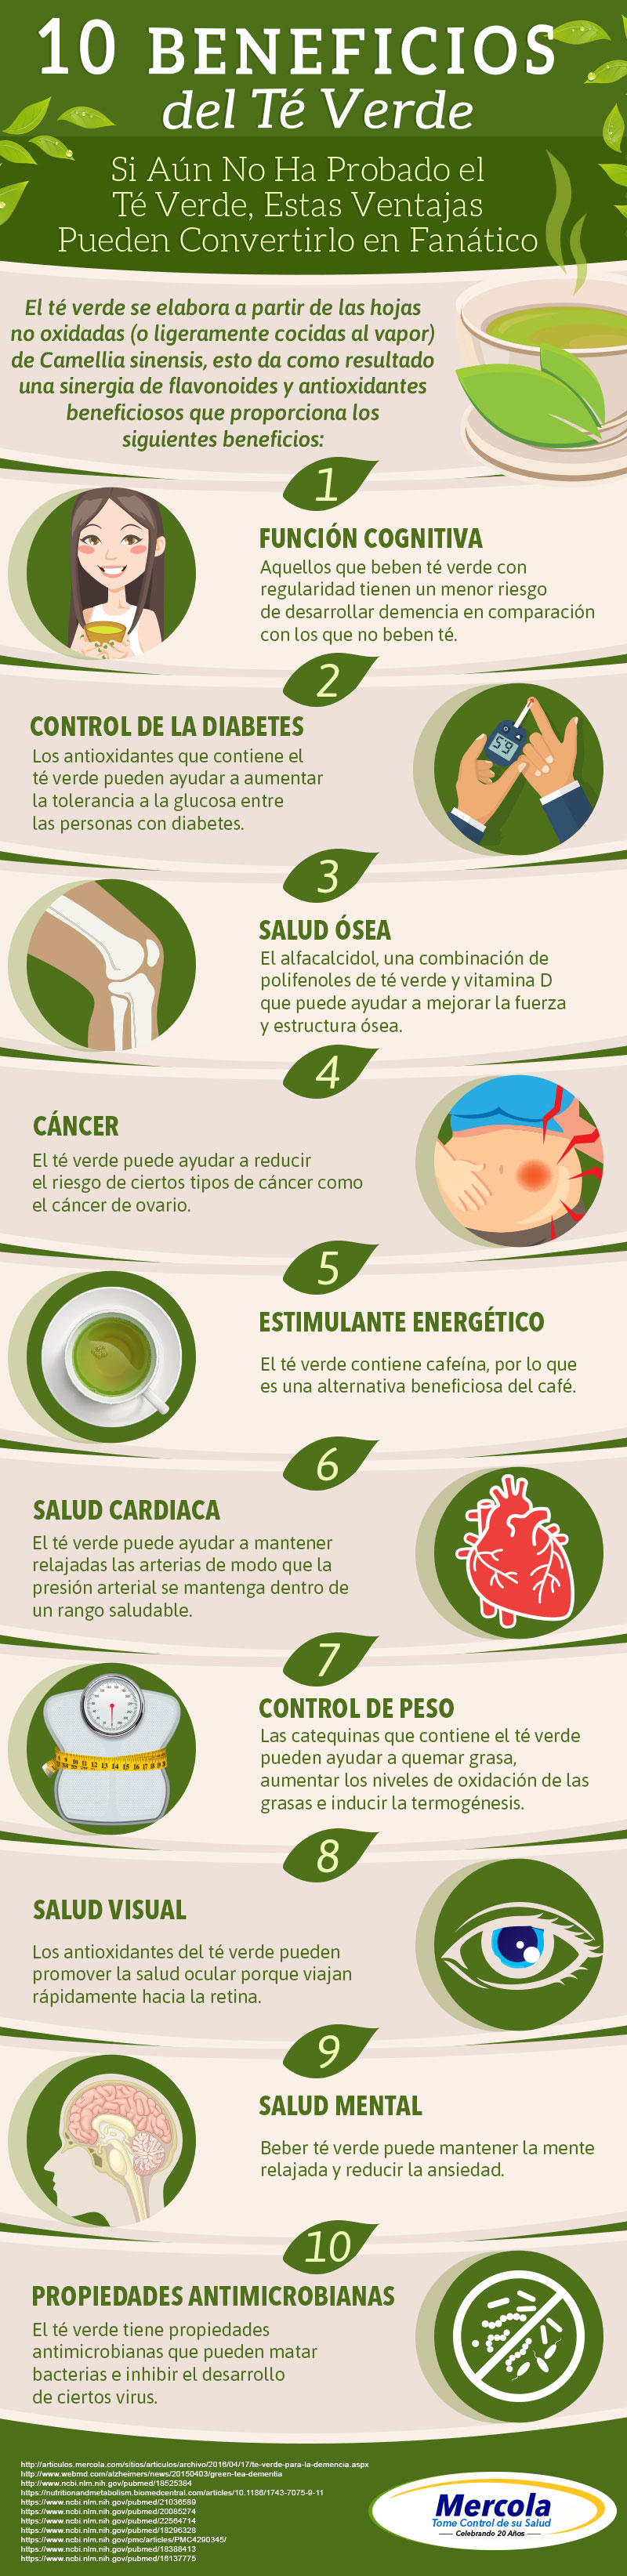 10 Beneficios del Té Verde